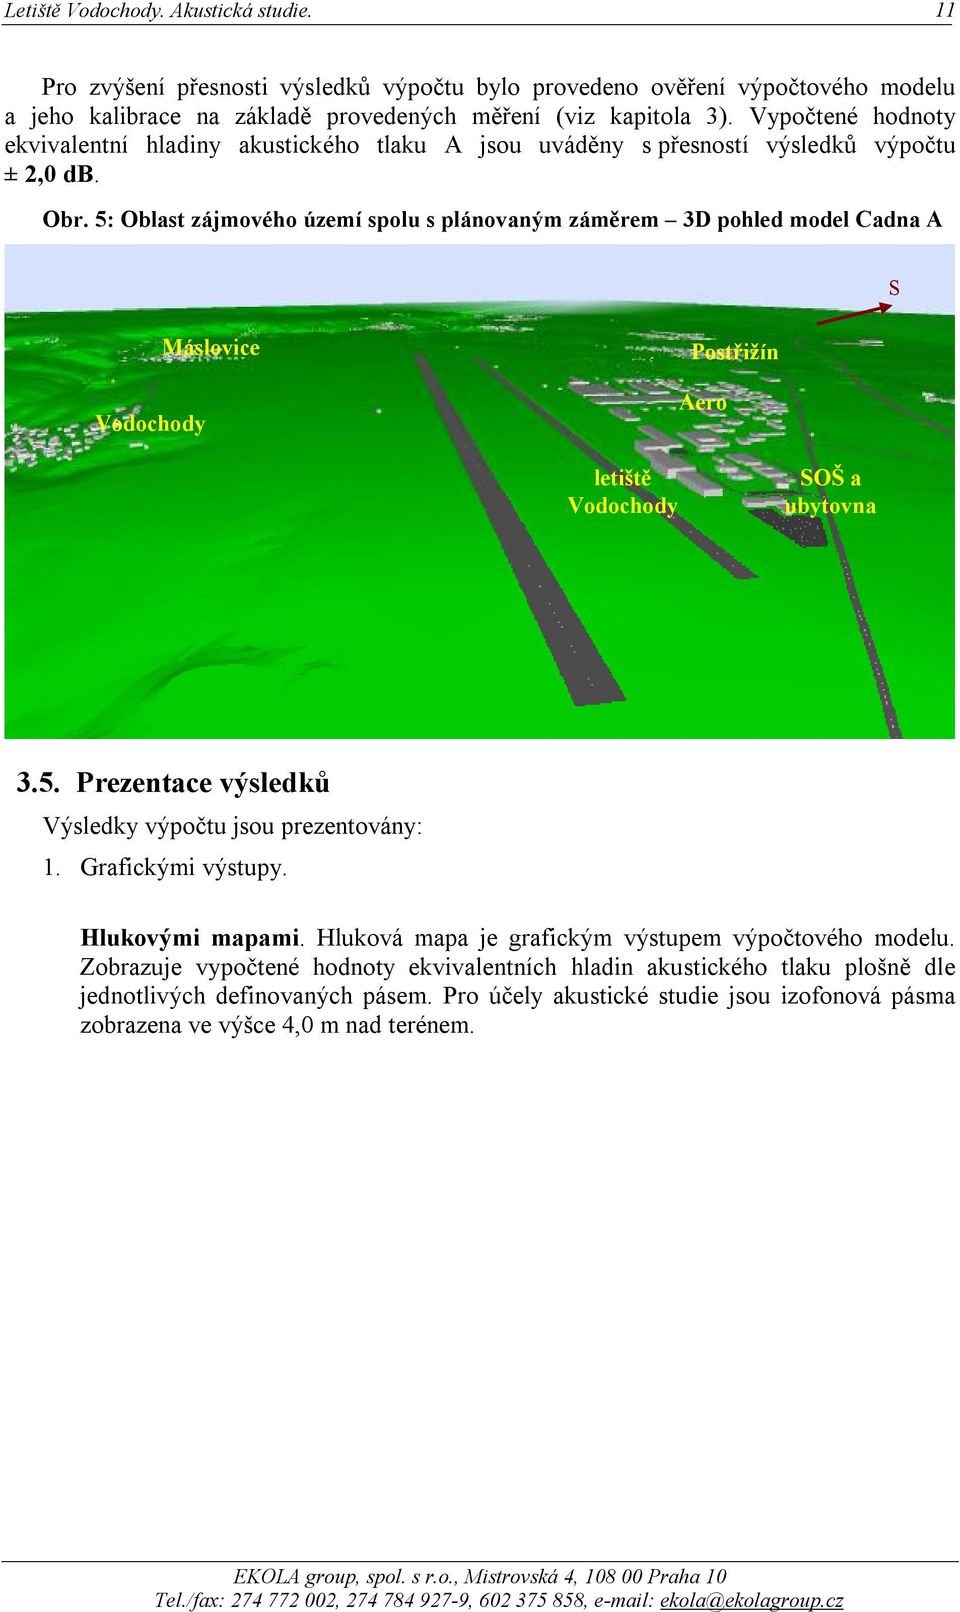 5: Oblast zájmového území spolu s plánovaným záměrem 3D pohled model Cadna A S Vodochody Máslovice Postřižín Aero letiště Vodochody SOŠ a ubytovna 3.5. Prezentace výsledků Výsledky výpočtu jsou prezentovány: 1.